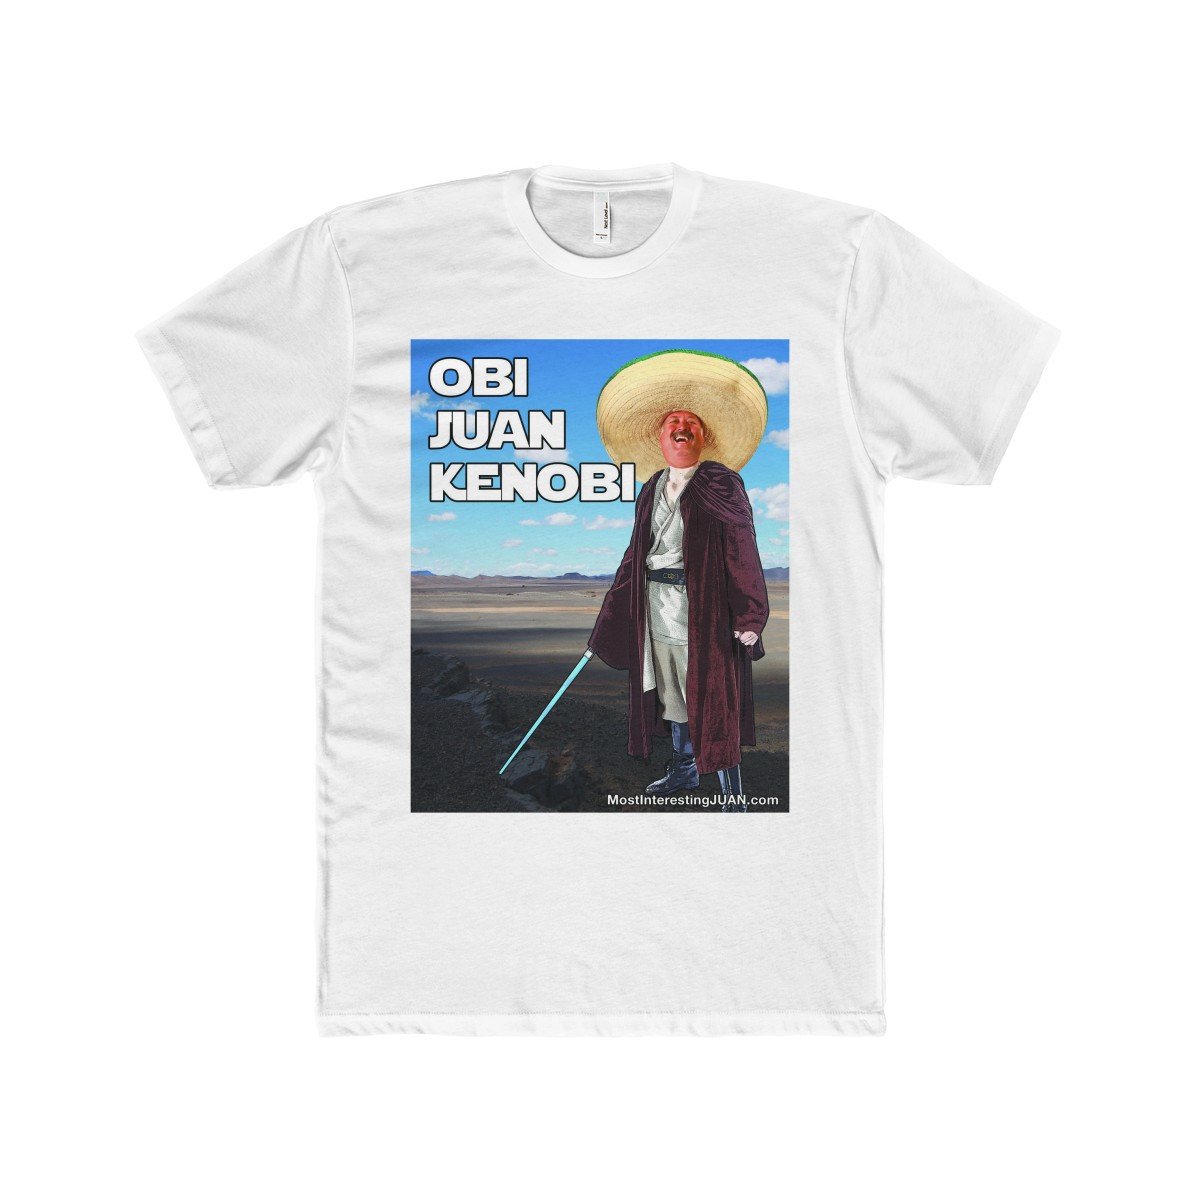 Obi Juan Kenobi - Men's T-shirt